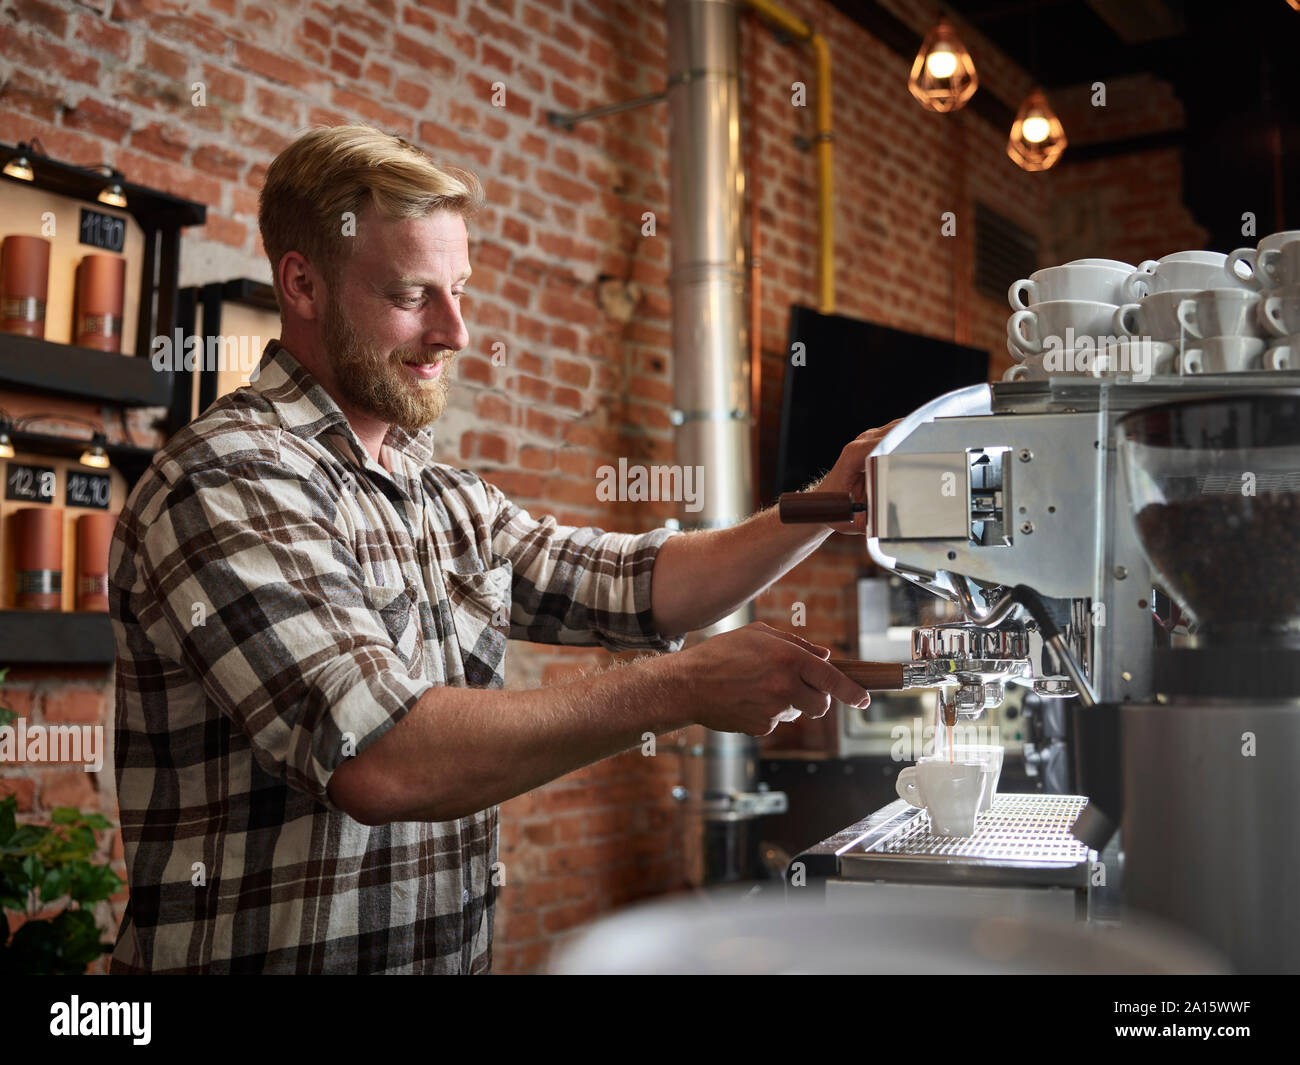 Man preparing espresso in a cafe Stock Photo